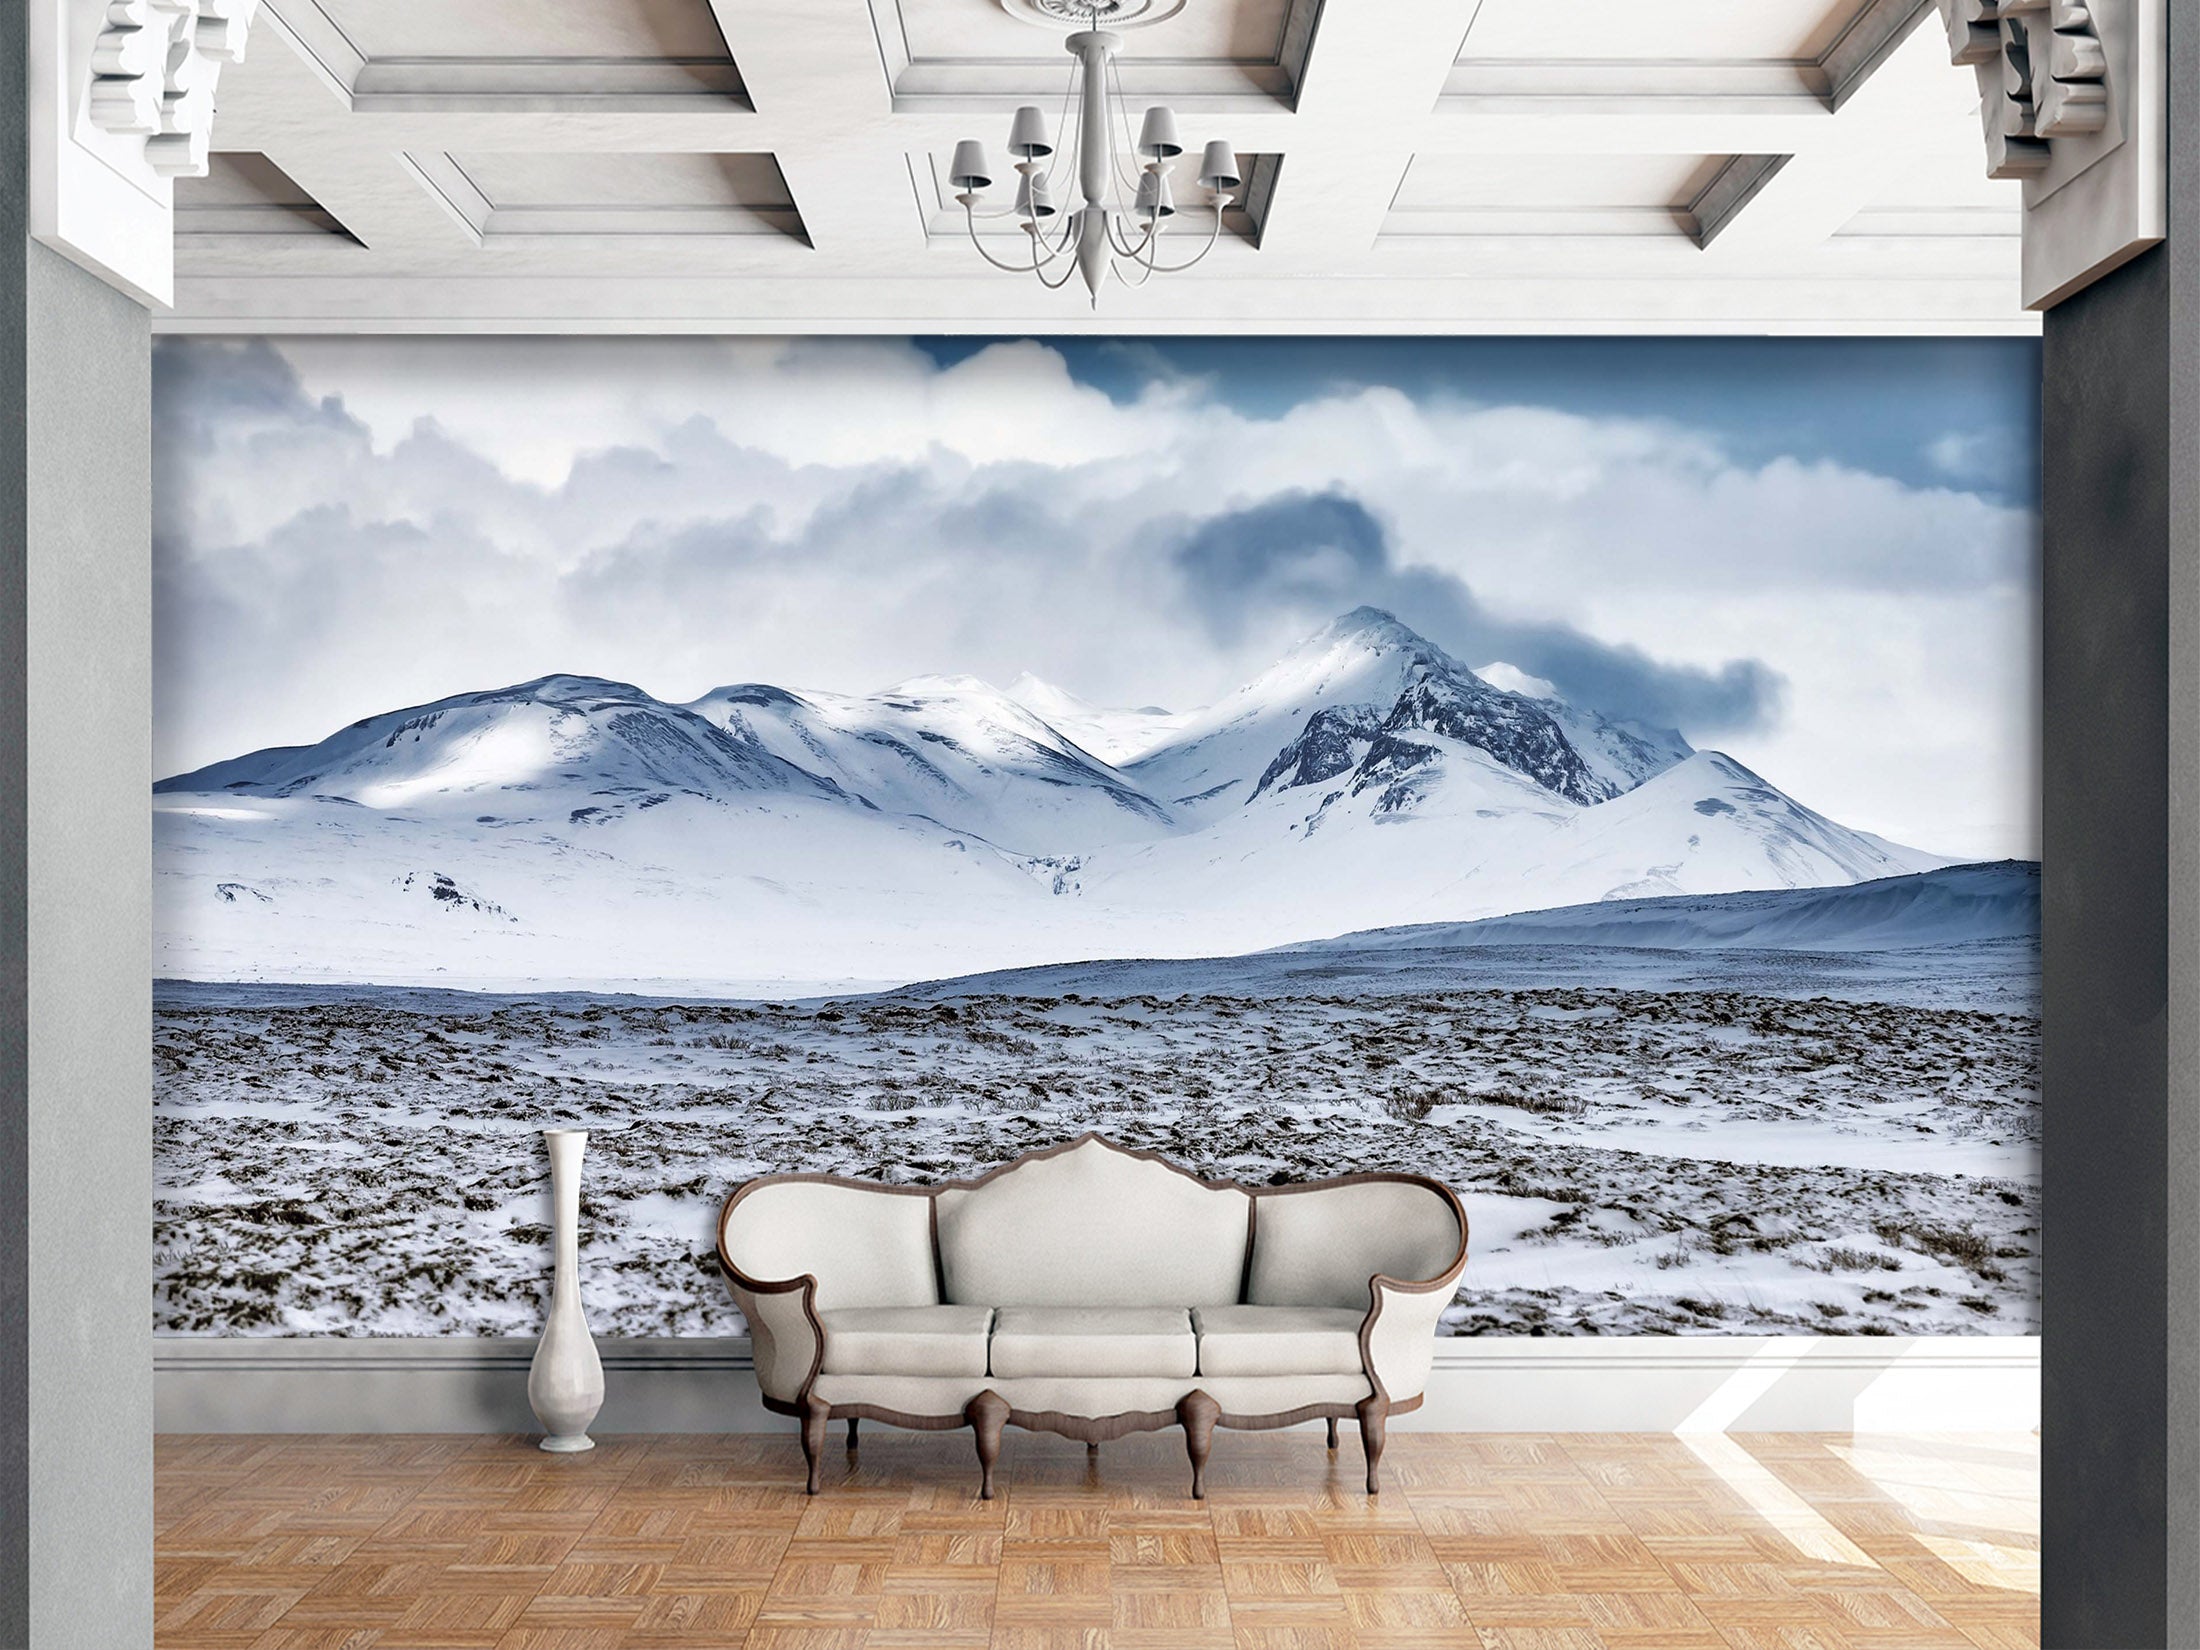 3D Snow Mountain 1022 Wall Murals